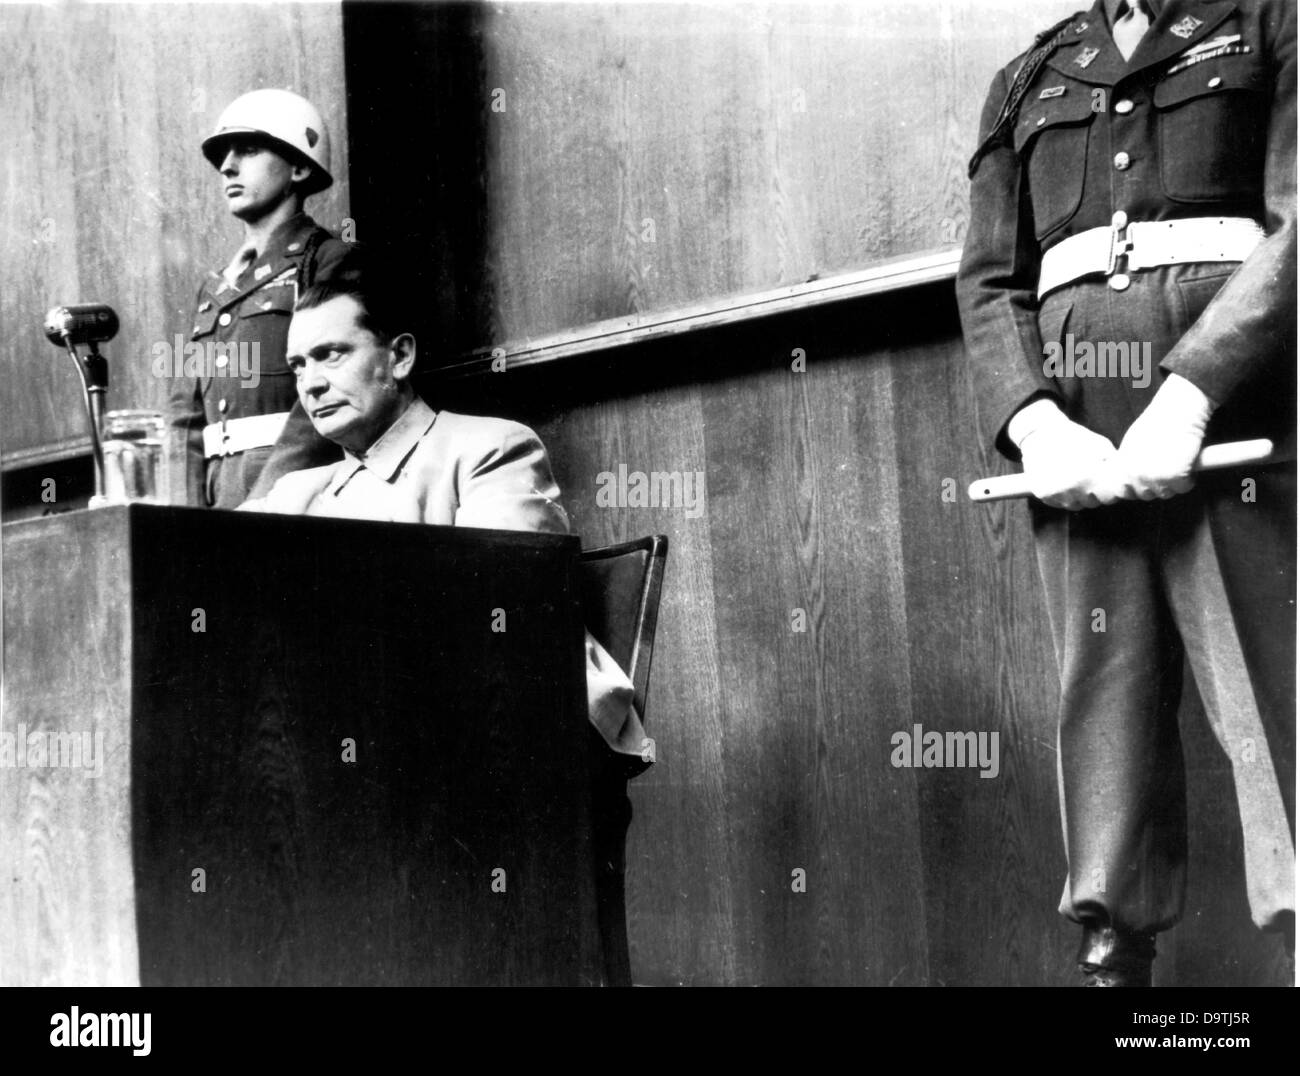 La photo par photographe Yevgeny Khaldei soviétique montre Hermann Göring, gardée par deux policiers militaires américains pendant les procès de Nuremberg en 1946. Photo : Yevgeny Khaldei Banque D'Images